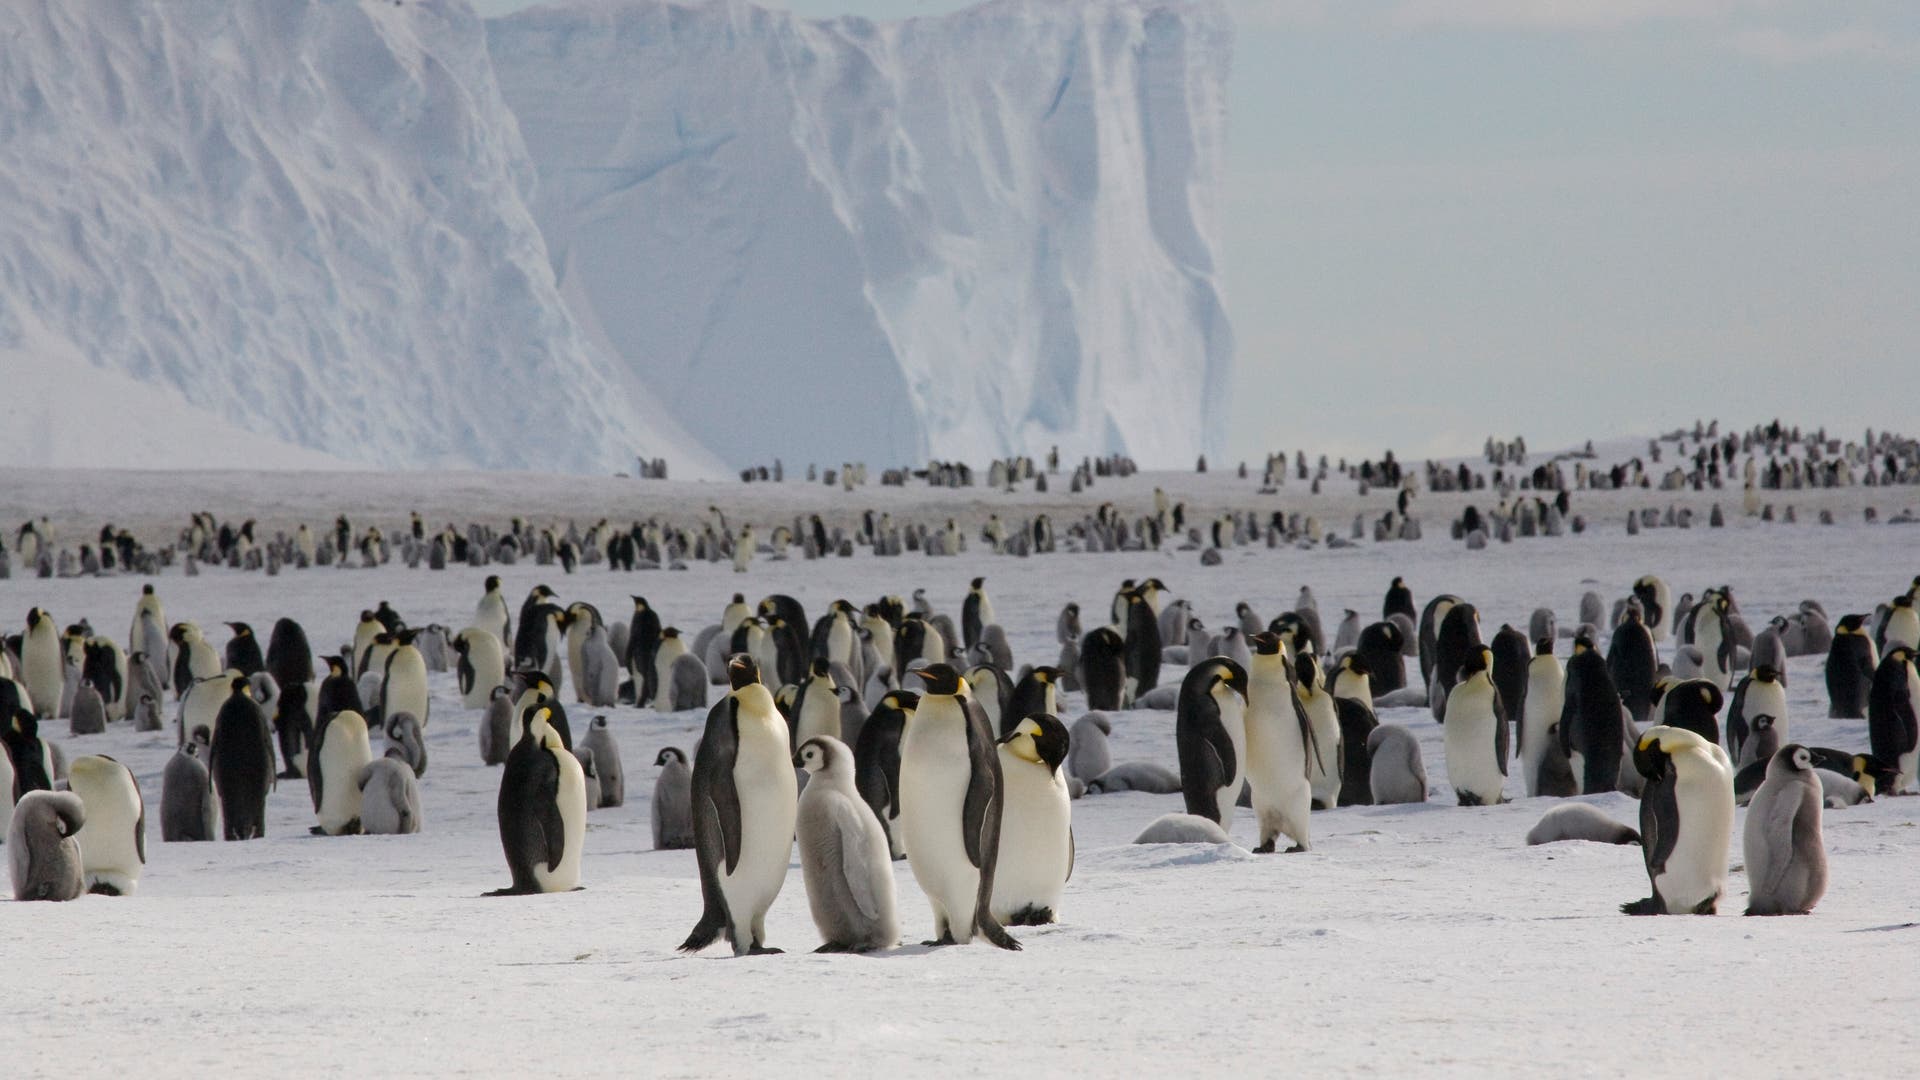 Kaiserpinguin-Kolonie in der Antarktis